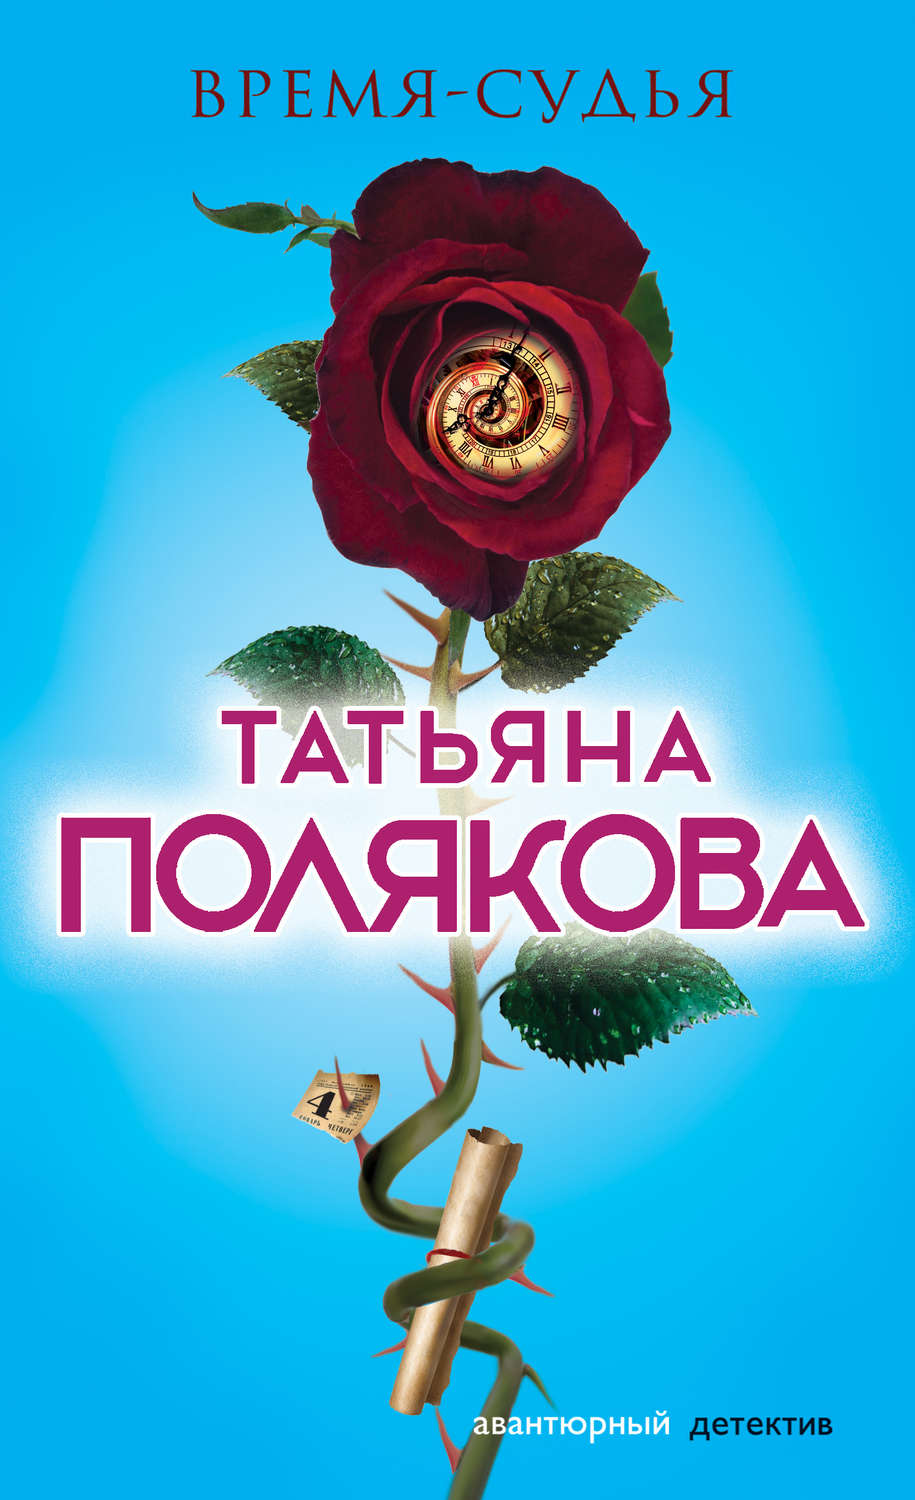 Скачать книги татьяны поляковой для iphone бесплатно